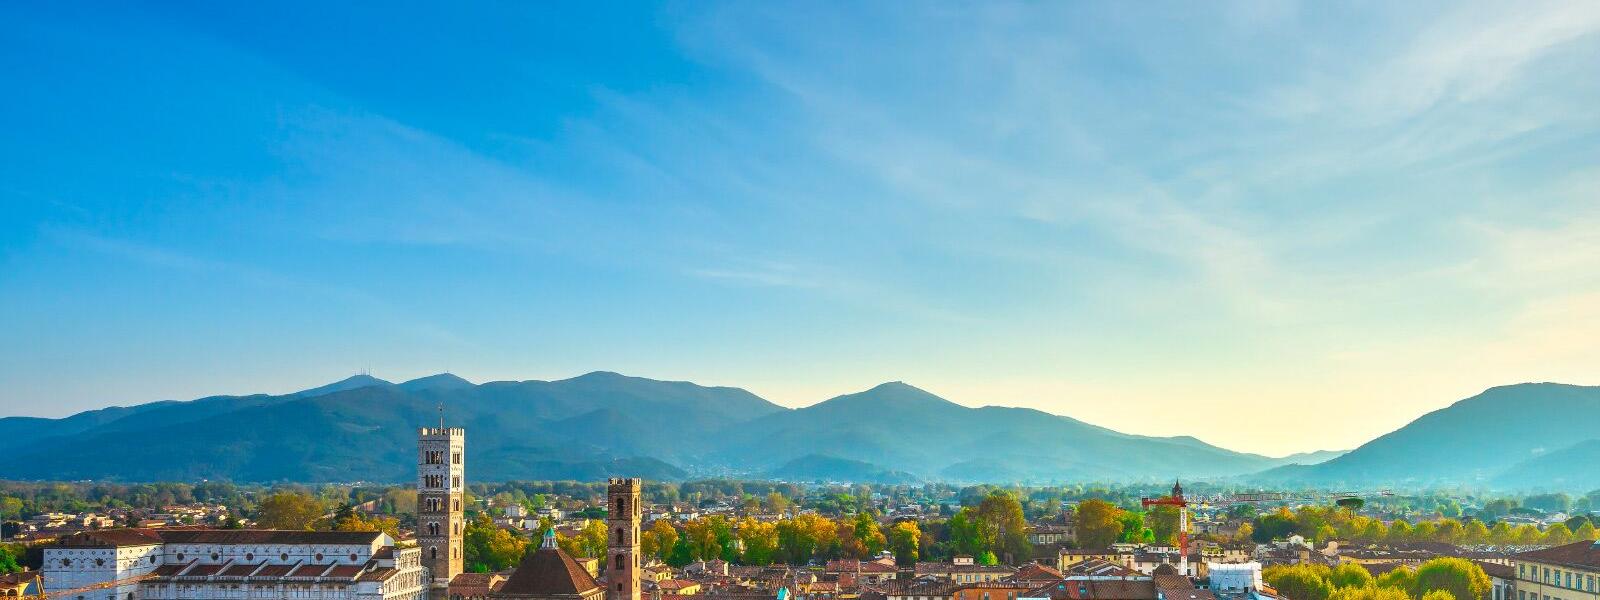 Blick auf die Stadt Lucca in der Toskana